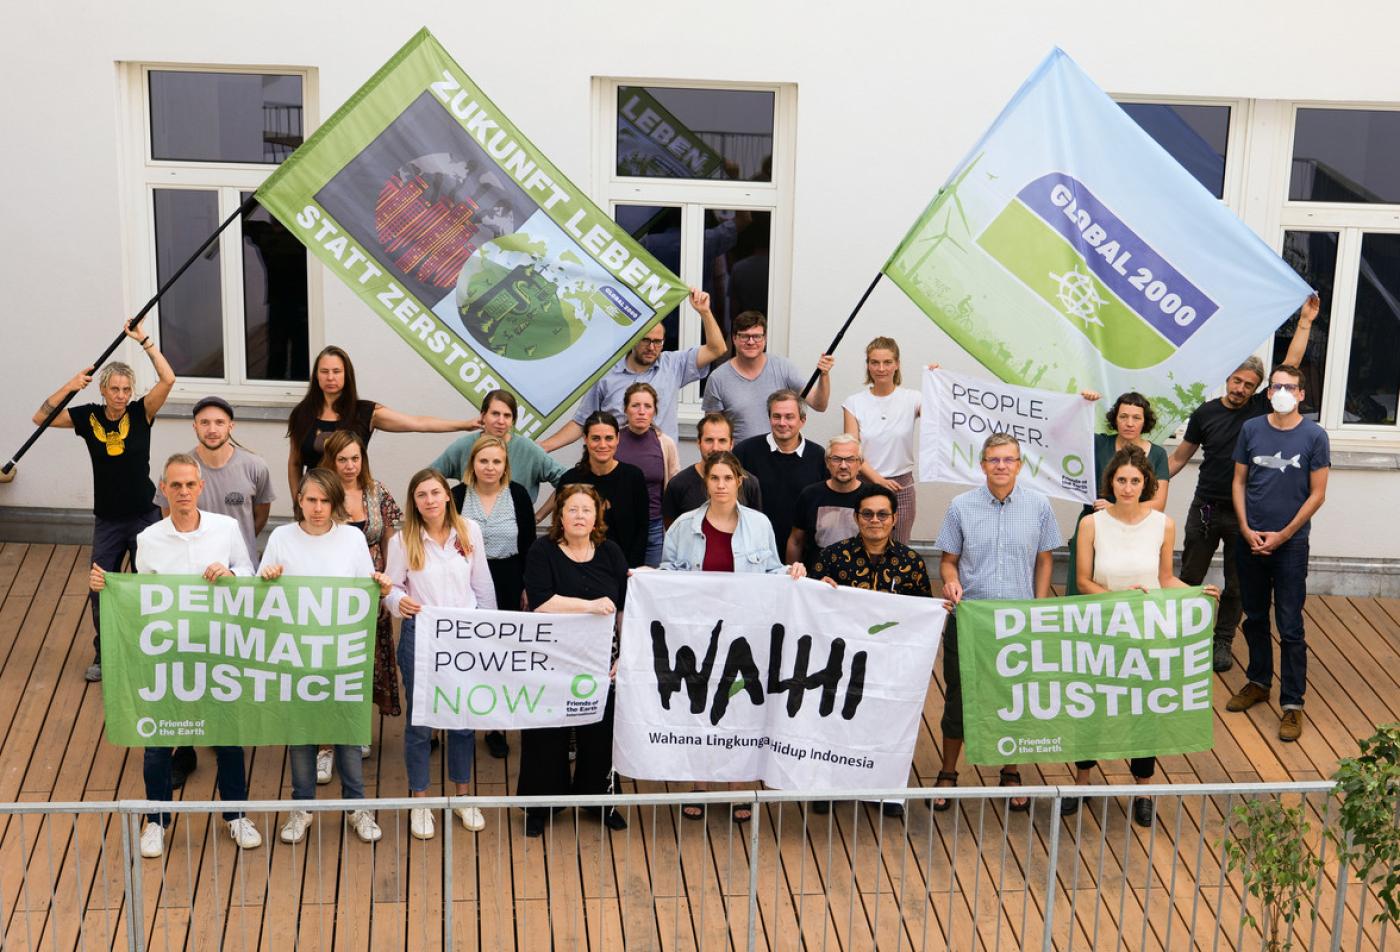 Gruppenfoto von GLOBAL 2000 Mitarbeiter:innen mit Parid und Yvan - dabei werden Fahen und Banner in die Kamera gehalten. Darauf finden sich Slogans wie "Demand Climate Justice" und "Zukunft leben statt zerstören"